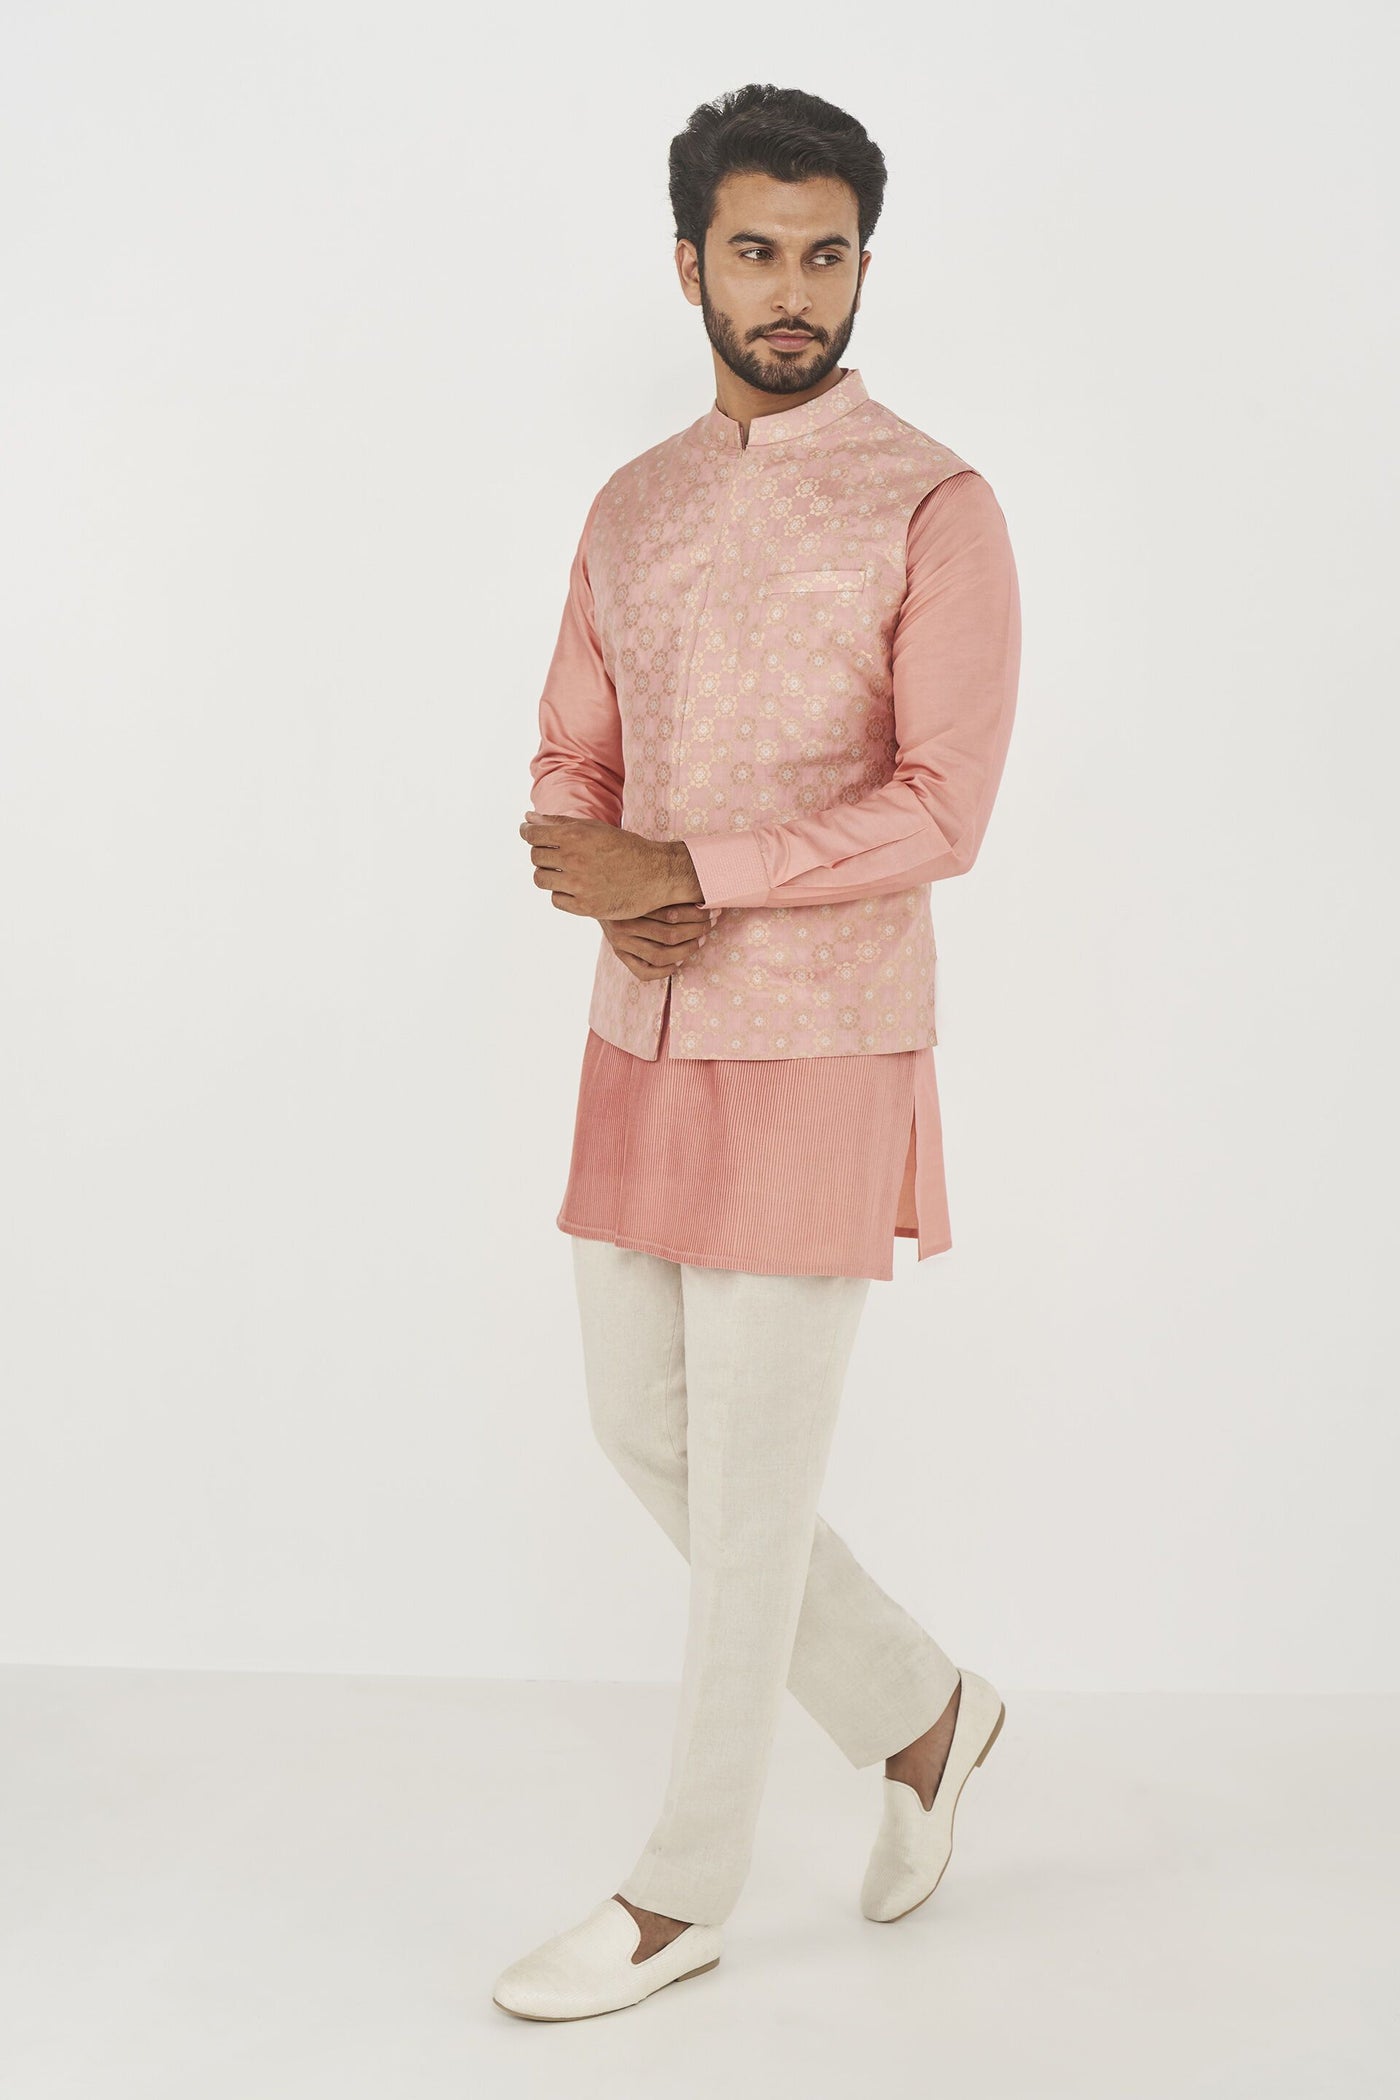 Anita Dongre menswear Nirved Nehru Jacket Pink indian designer wear online shopping melange singapore